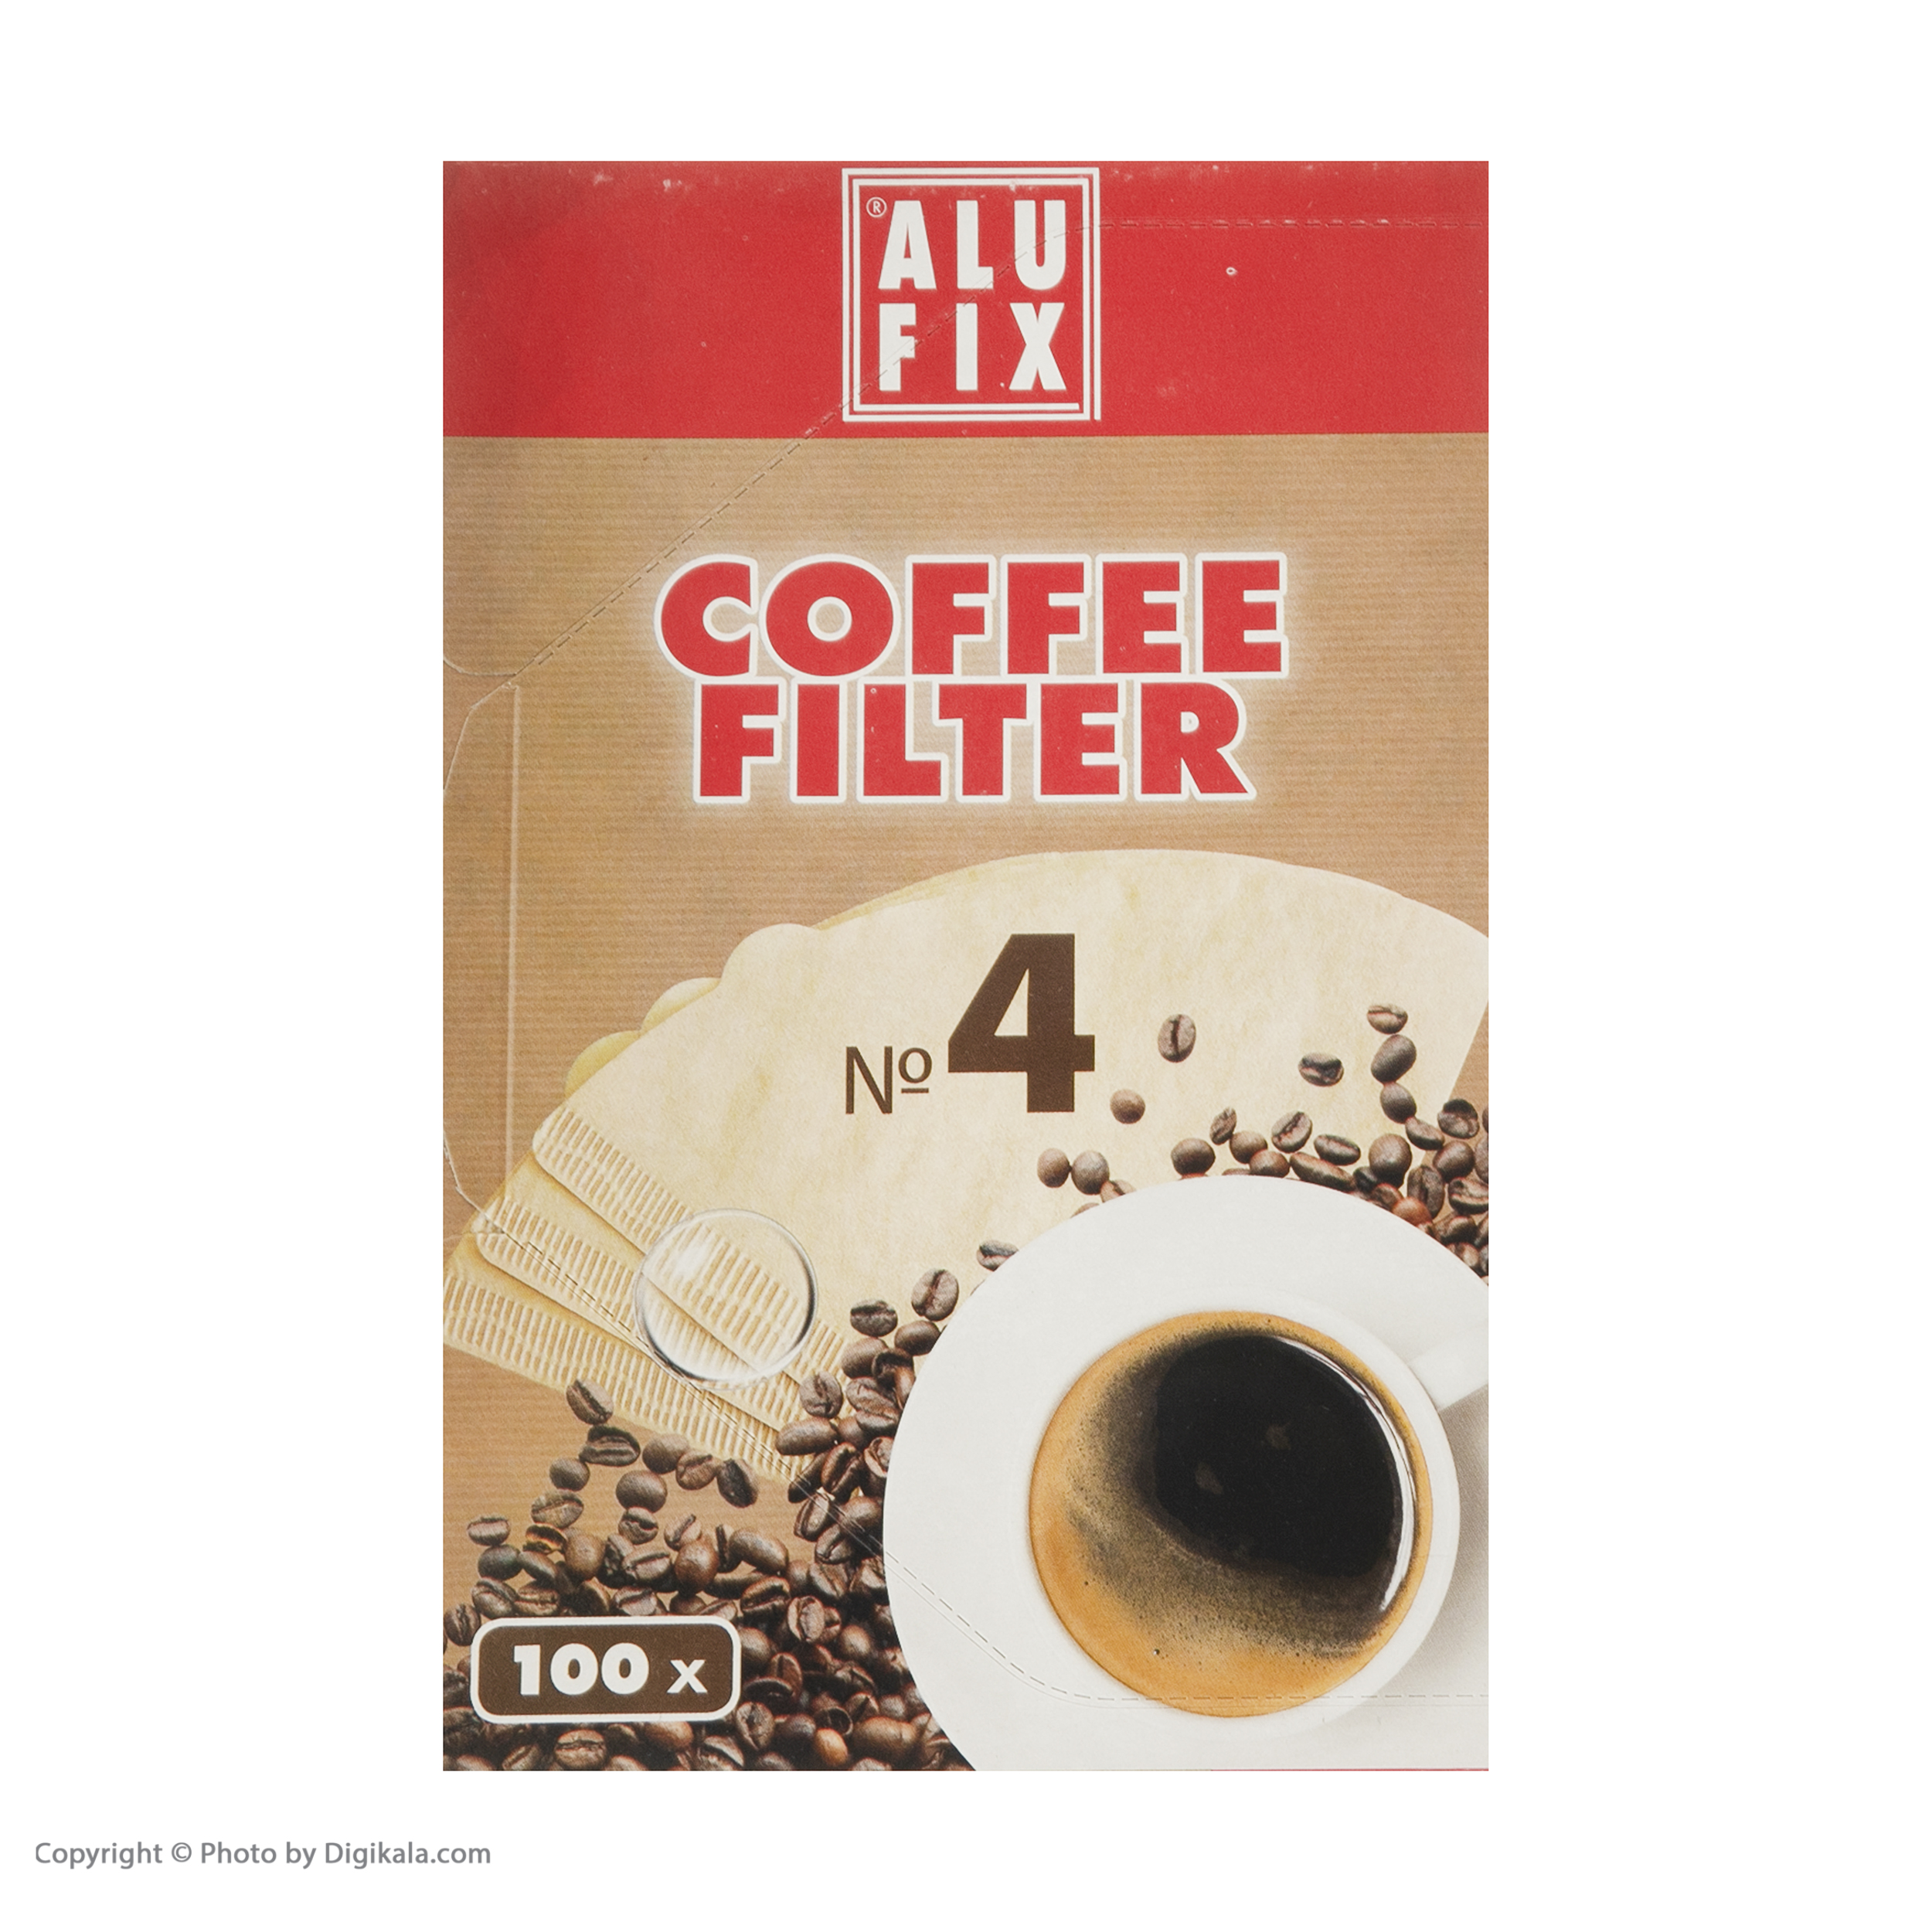 فیلتر قهوه الوفیکس مدل 91082 بسته 100 عددی